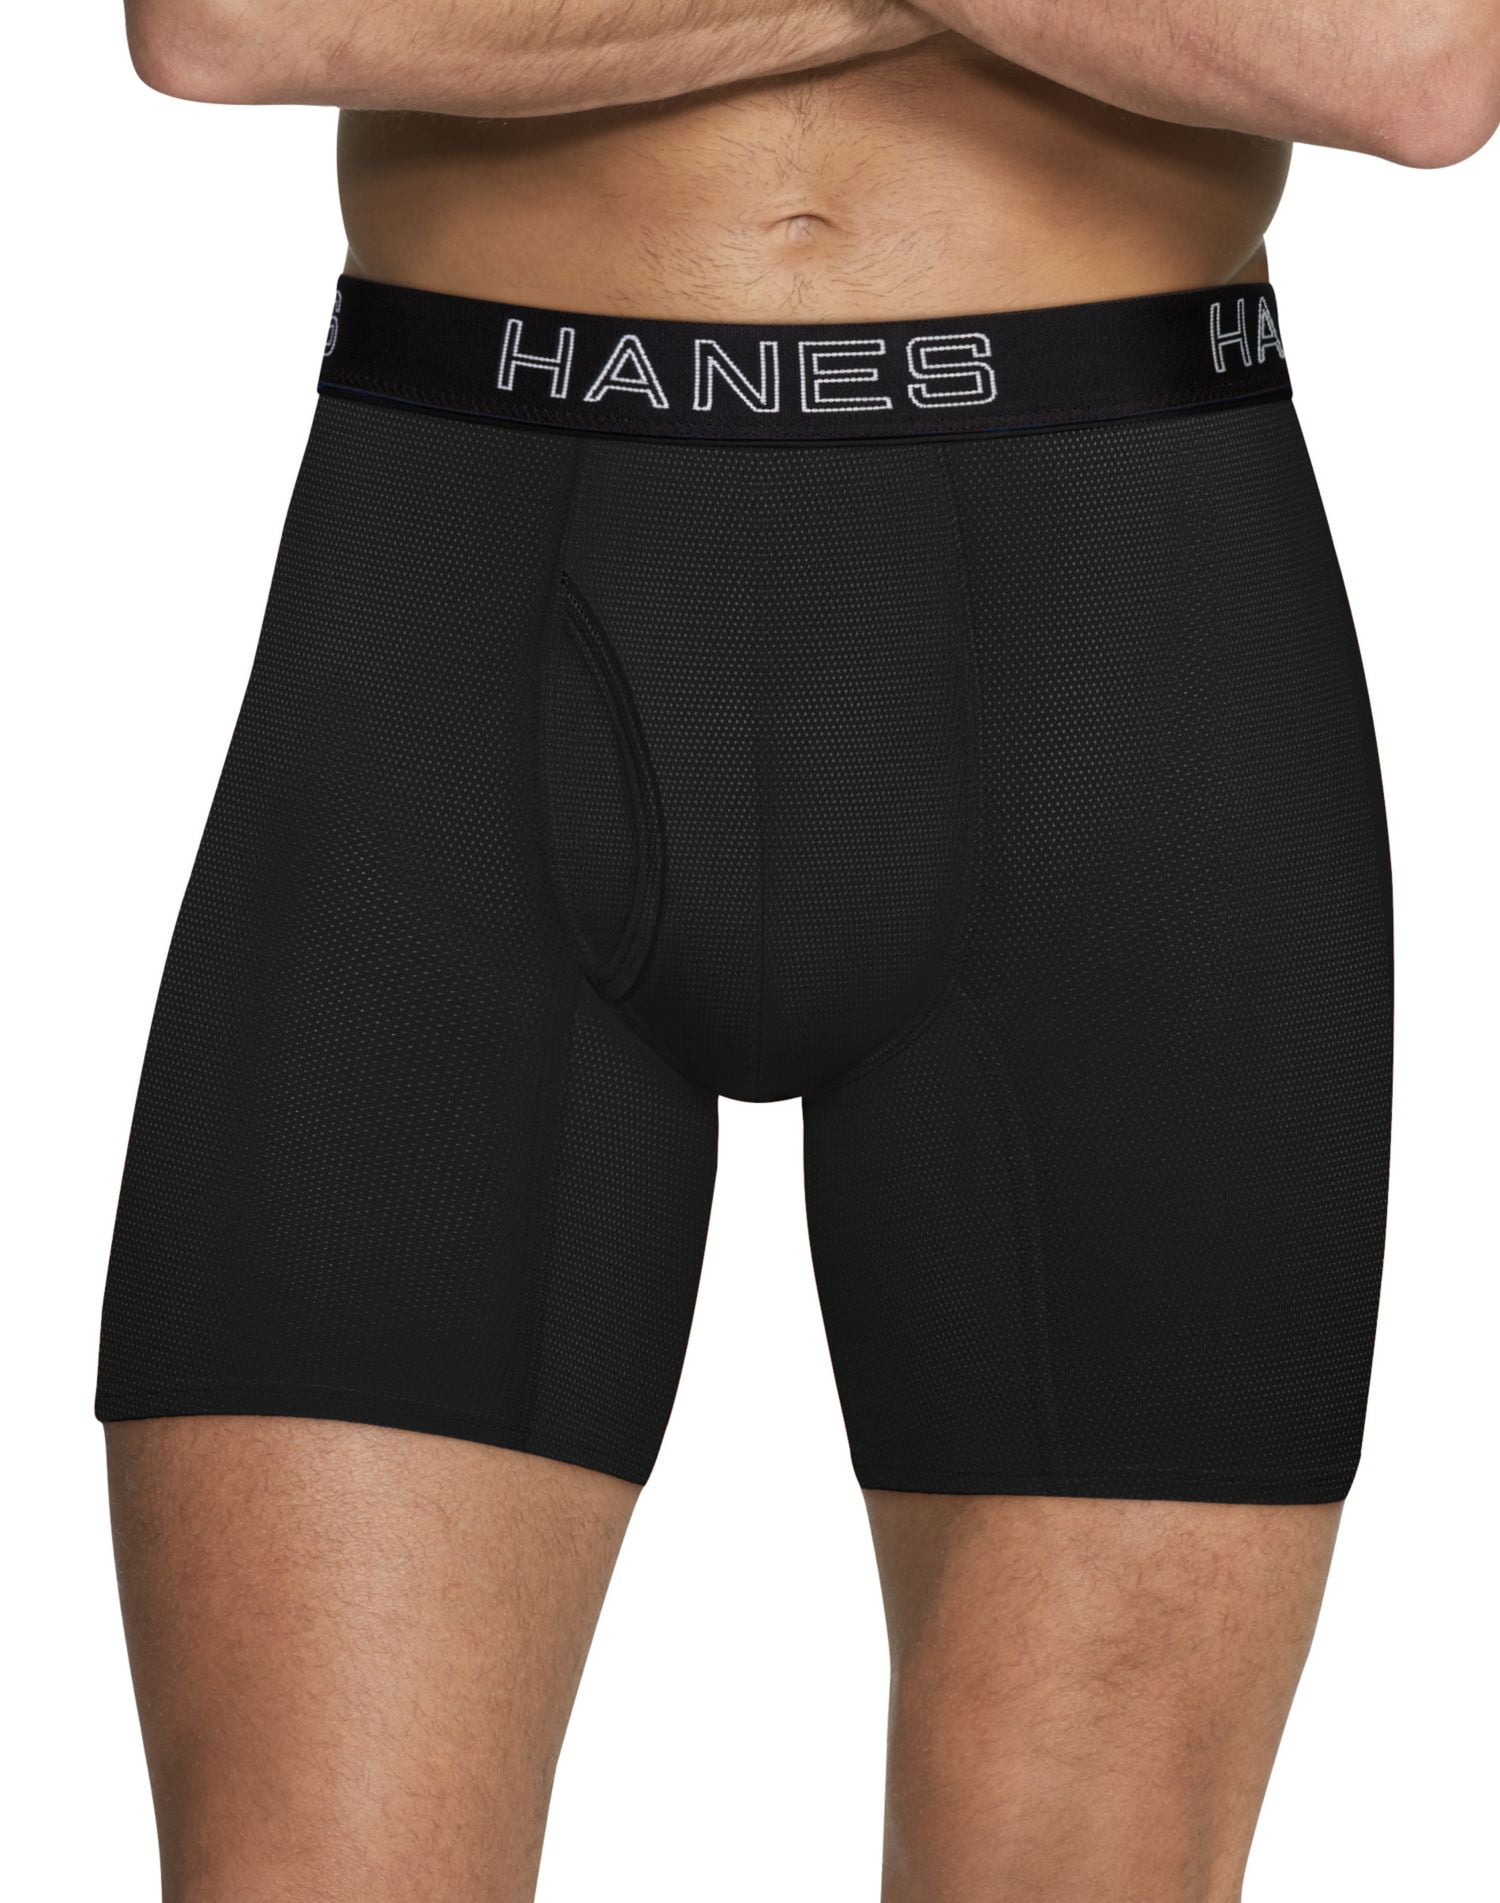 Men Breathable Mesh Panties Pouch Briefs Low Rise Flex Sports Underwear ...